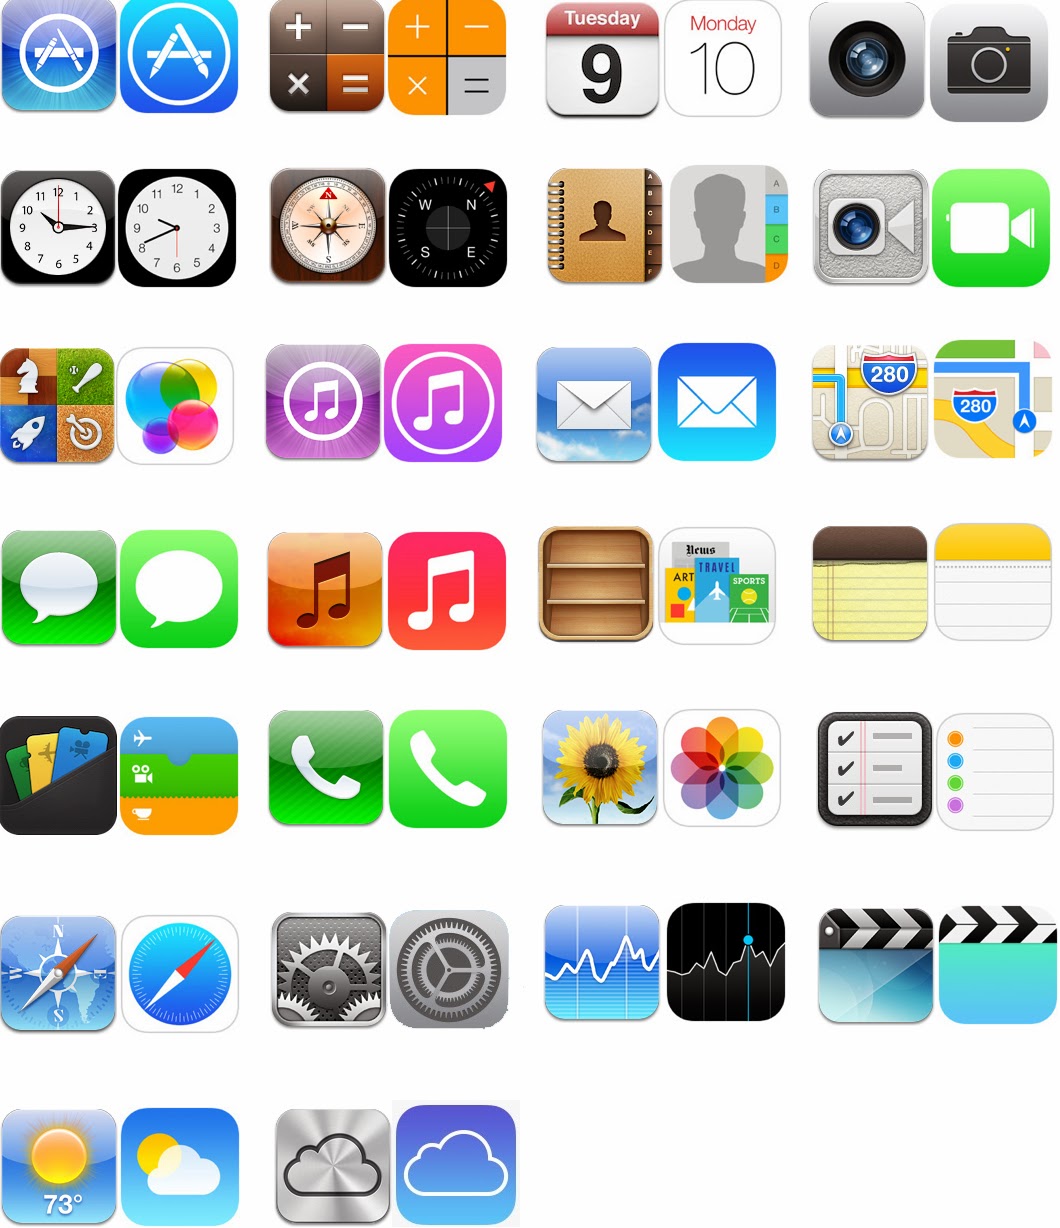 MUH82 iPad App: Logo design